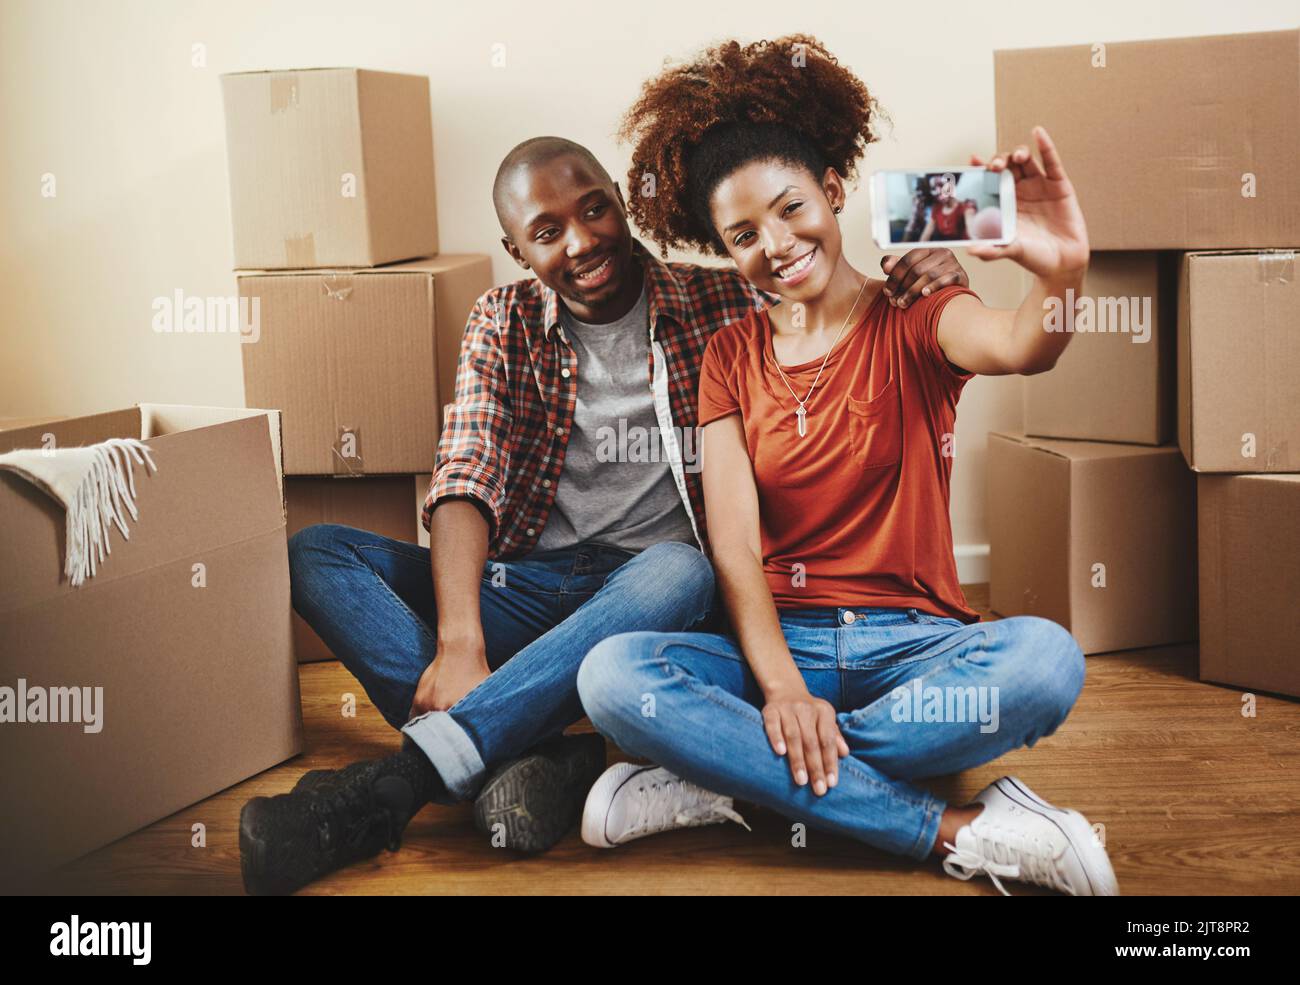 Muoversi insieme è una parte importante di qualsiasi rapporto: Una giovane coppia che prende un selfie nella loro nuova casa. Foto Stock